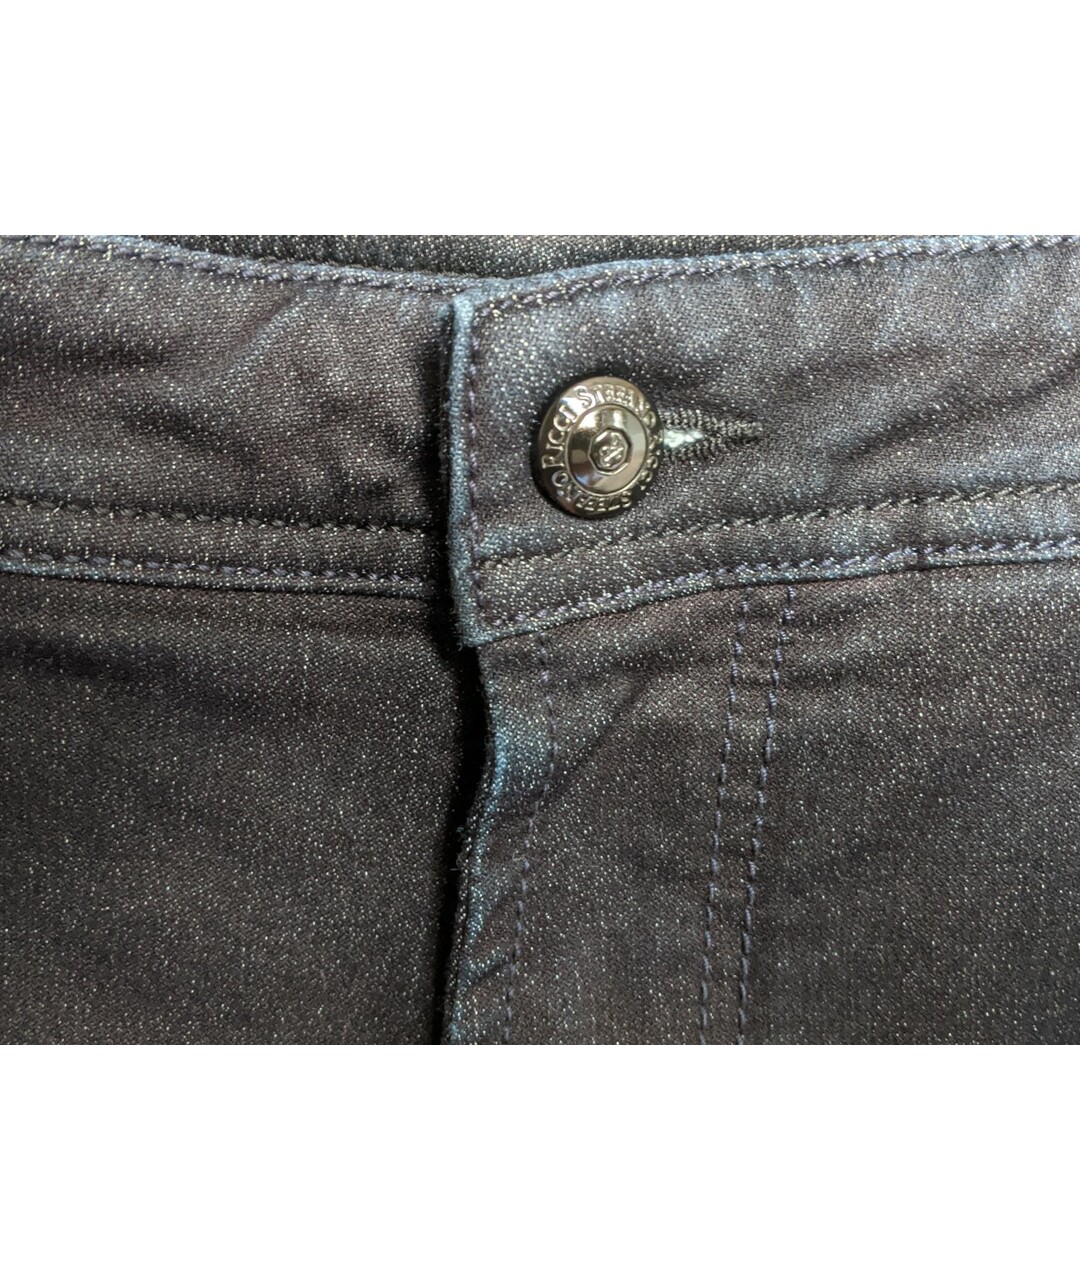 STEFANO RICCI Антрацитовые хлопковые прямые джинсы, фото 3